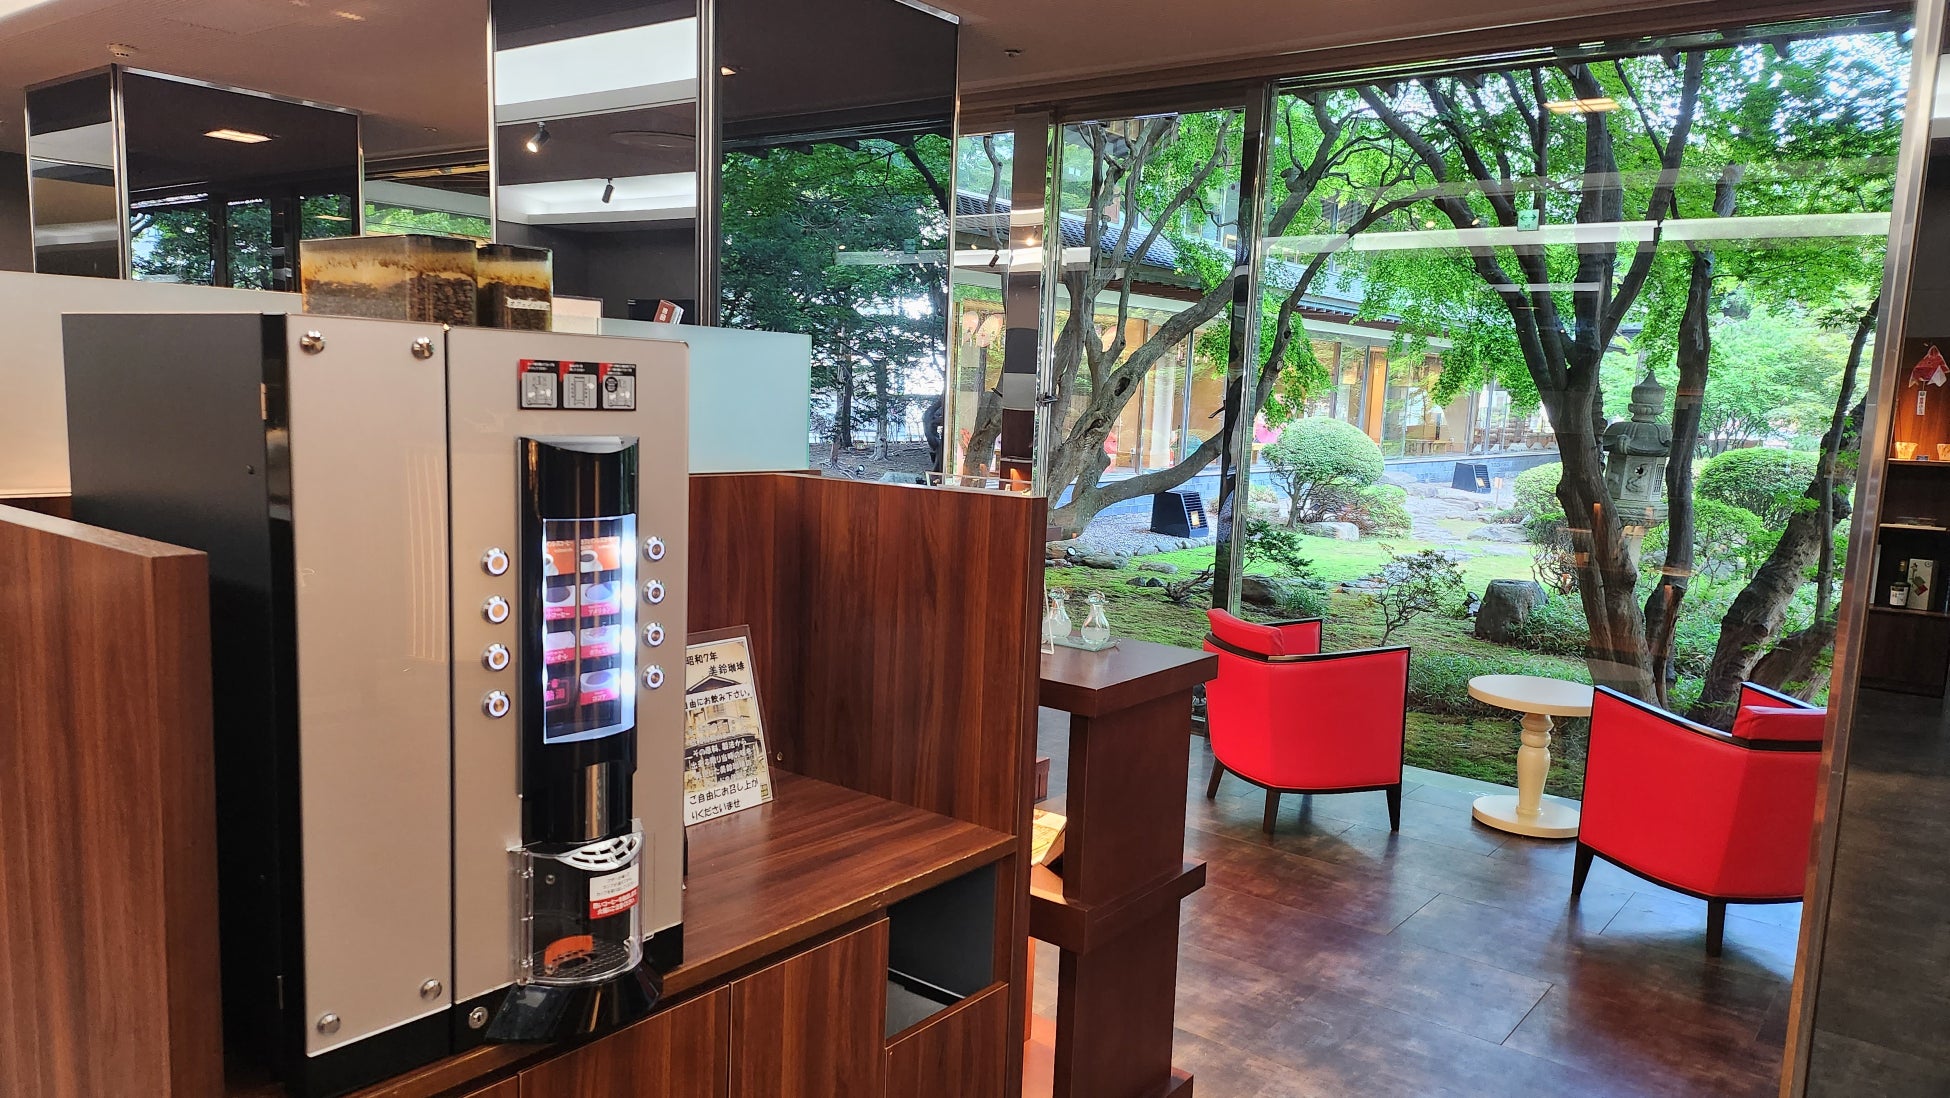 『珈琲焙煎工房 函館美鈴』の挽きたてのコーヒーやココアのフリーサービスもあります